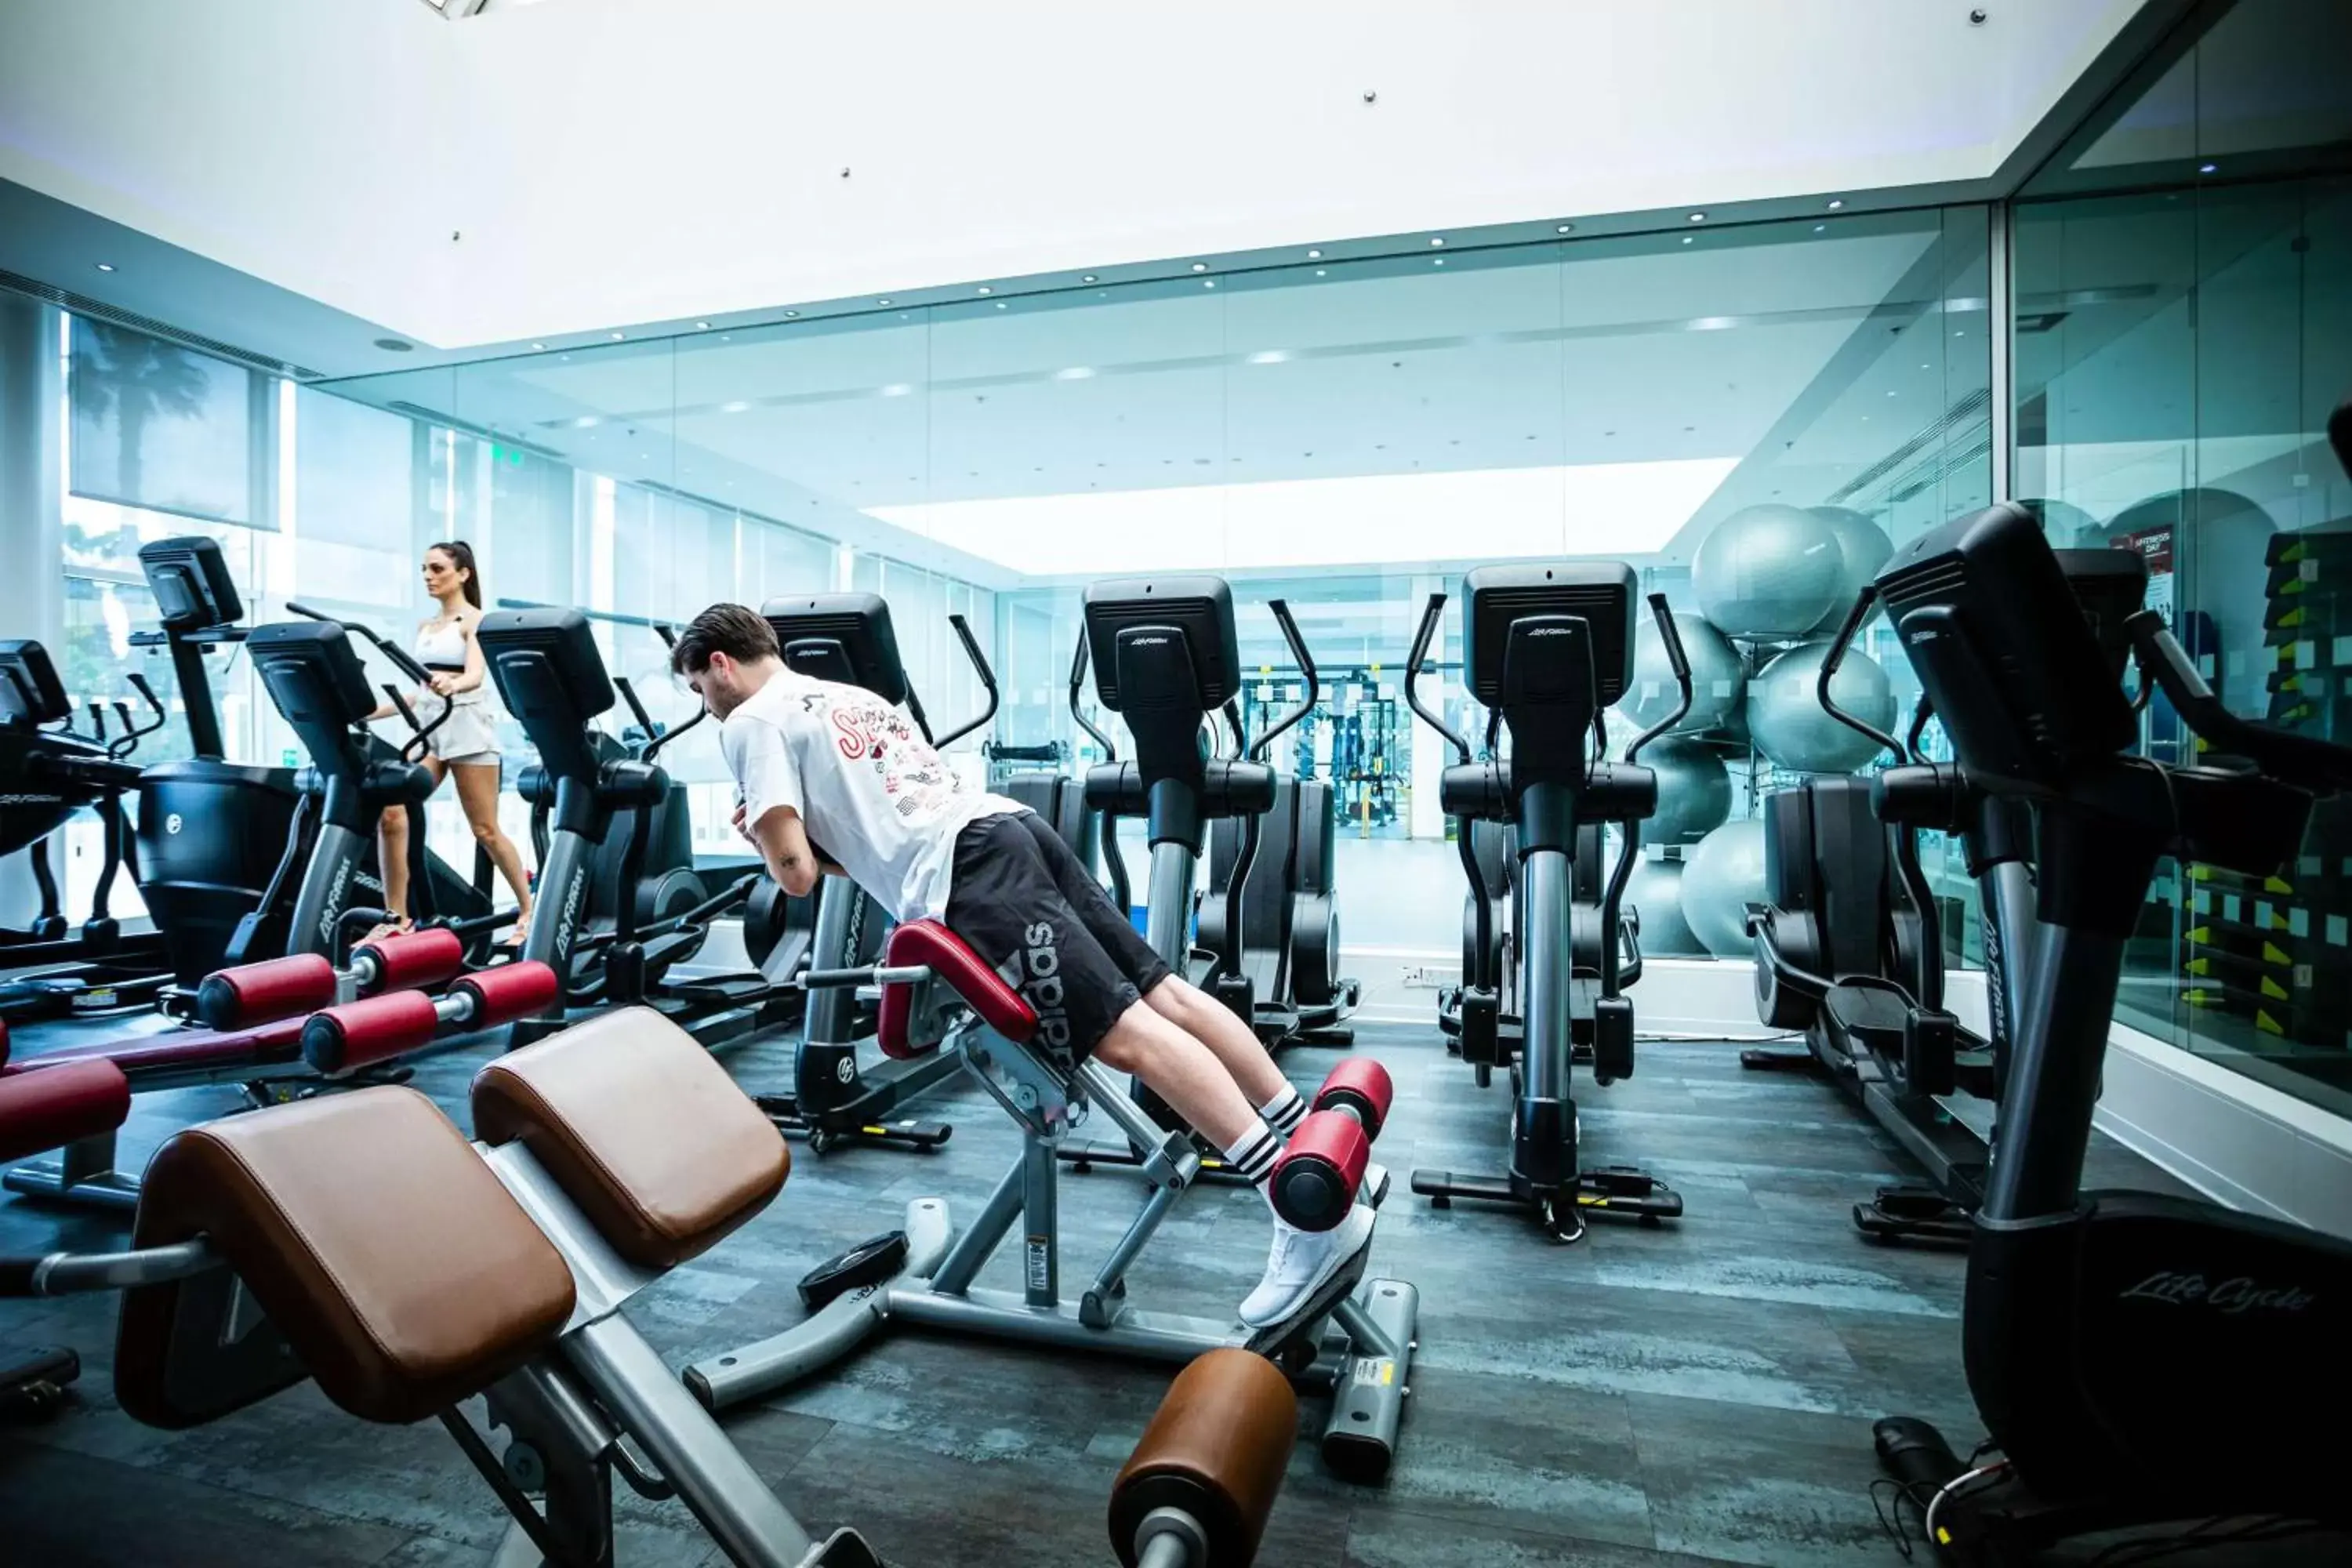 Fitness centre/facilities, Fitness Center/Facilities in Hilton Nicosia